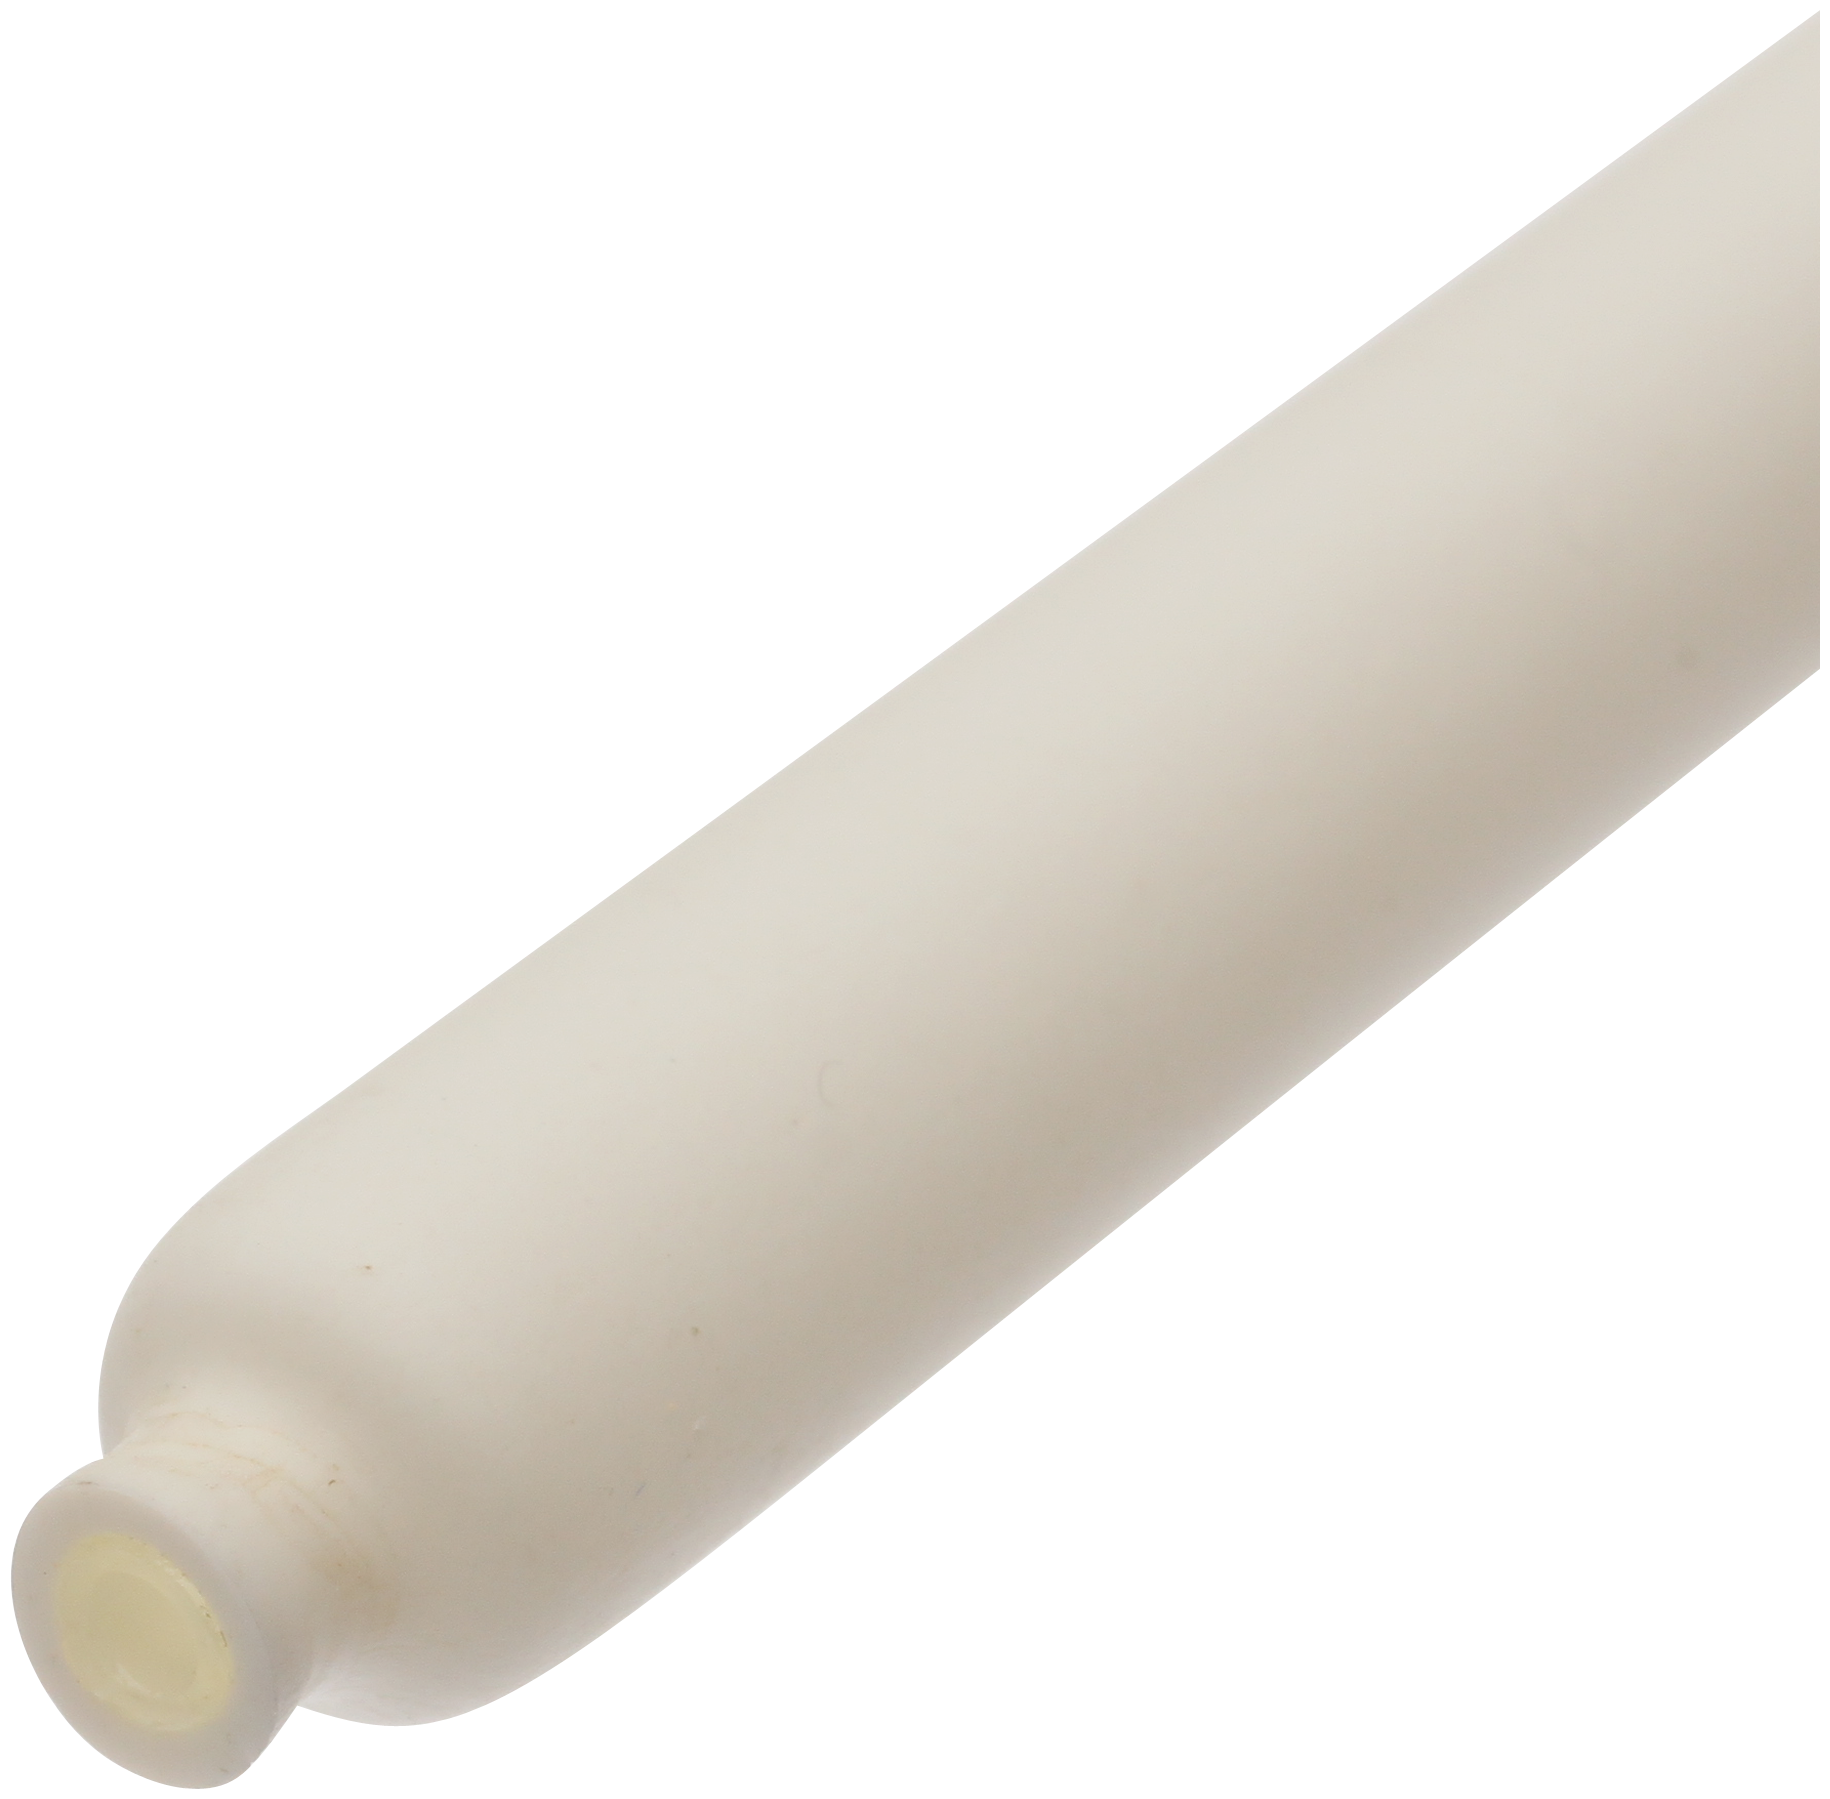 Термоусадочные белые клеевые трубки 3:1 с подавлением горения ТТК(3:1)-12/4 (белая) (КВТ) (10 шт. в упаковке)